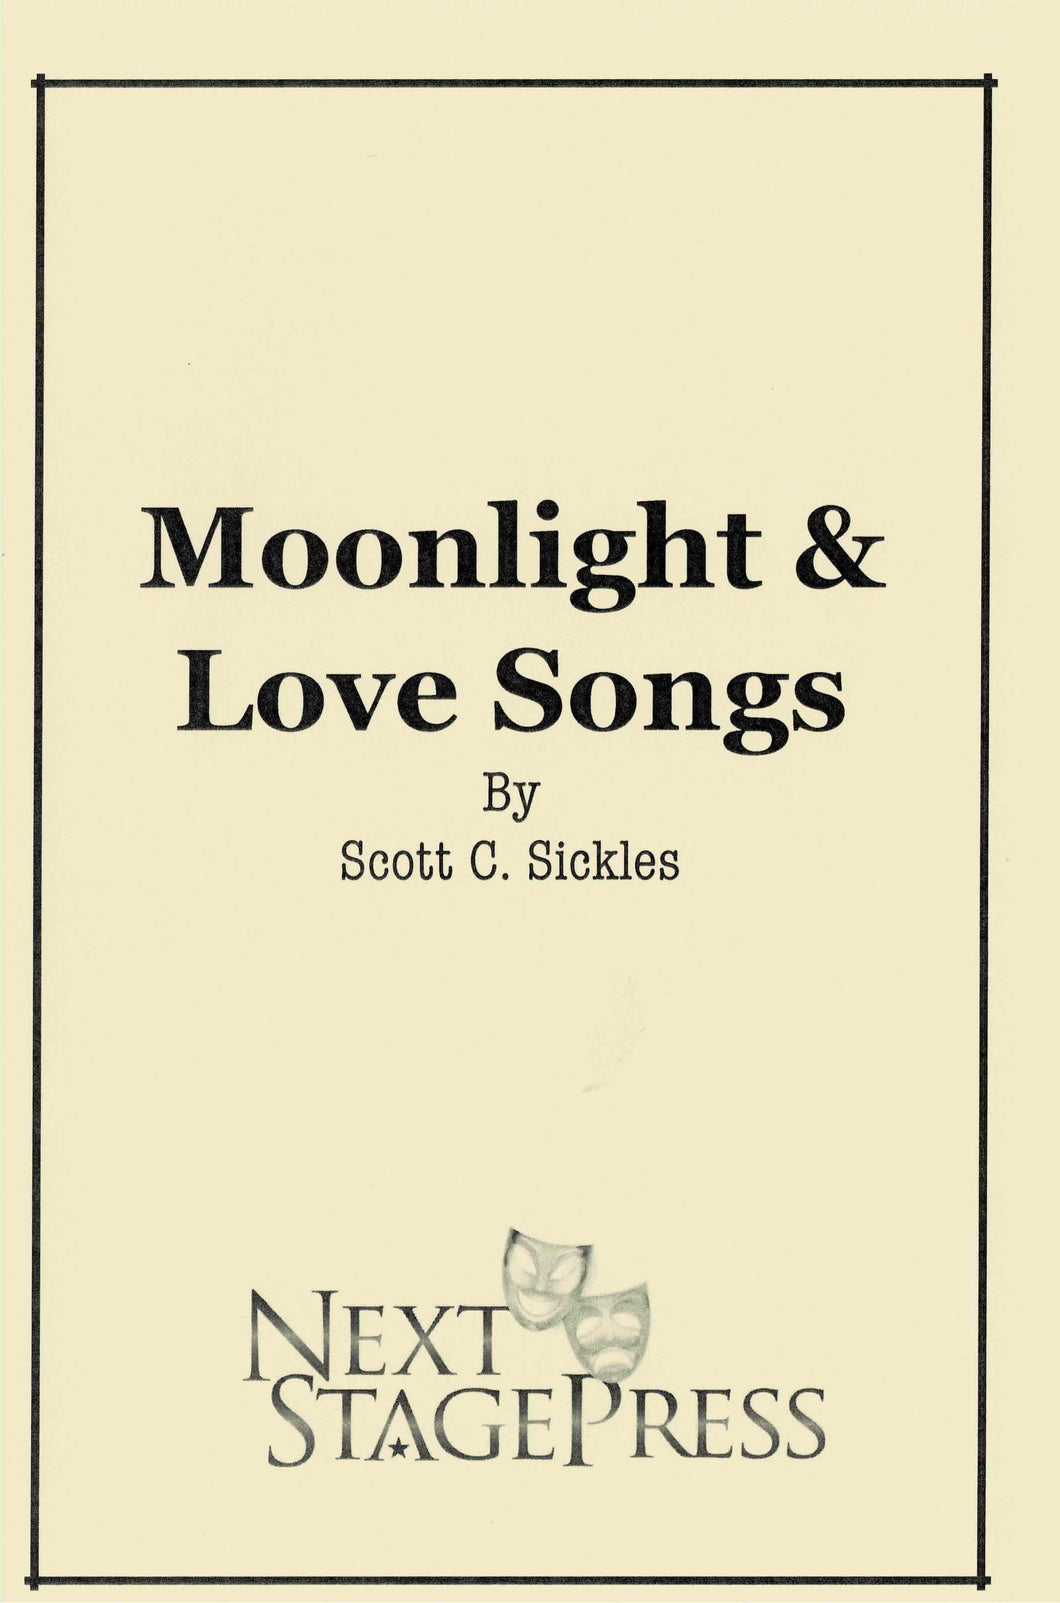 Moonlight & Love Songs by Scott C. Sickles - Digital Version